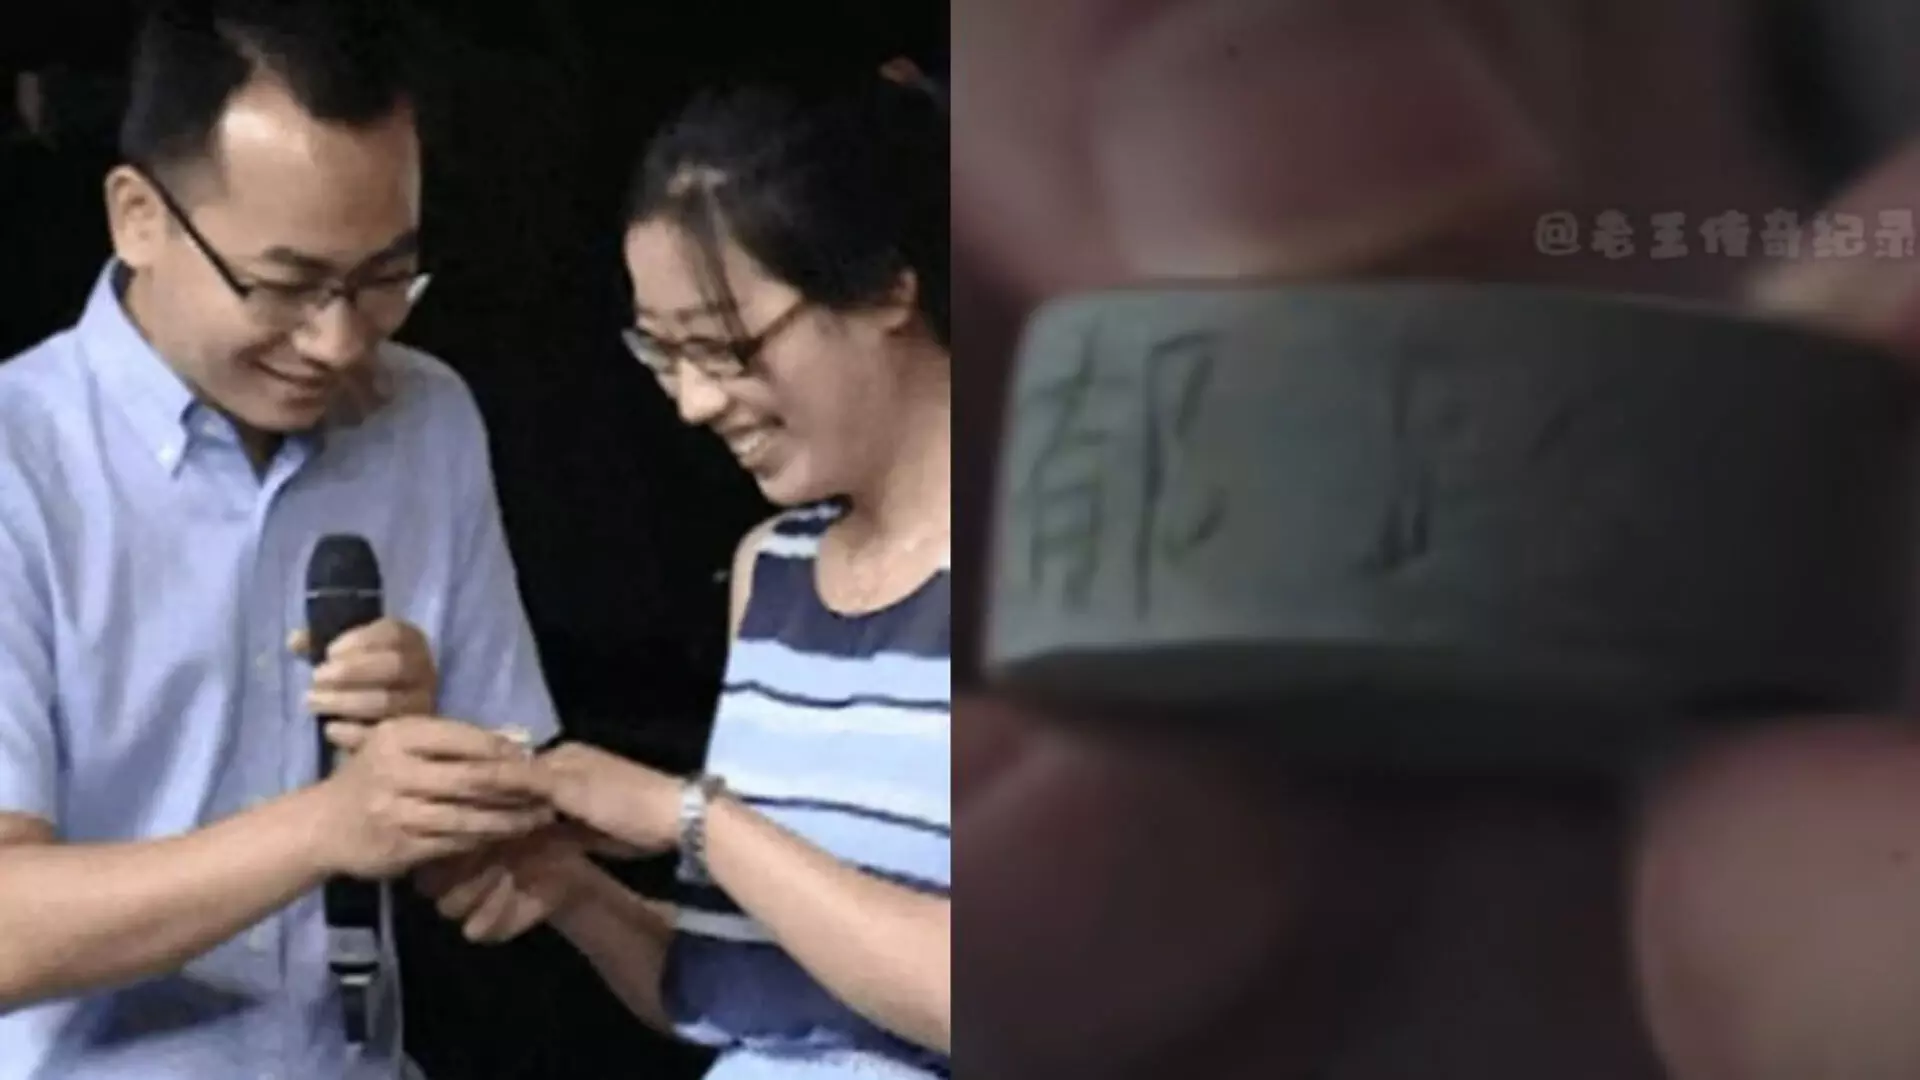 Chinese शख्स ने अपनी गर्लफ्रेंड को प्रपोज करने के लिए सीमेंट की अंगूठी दी